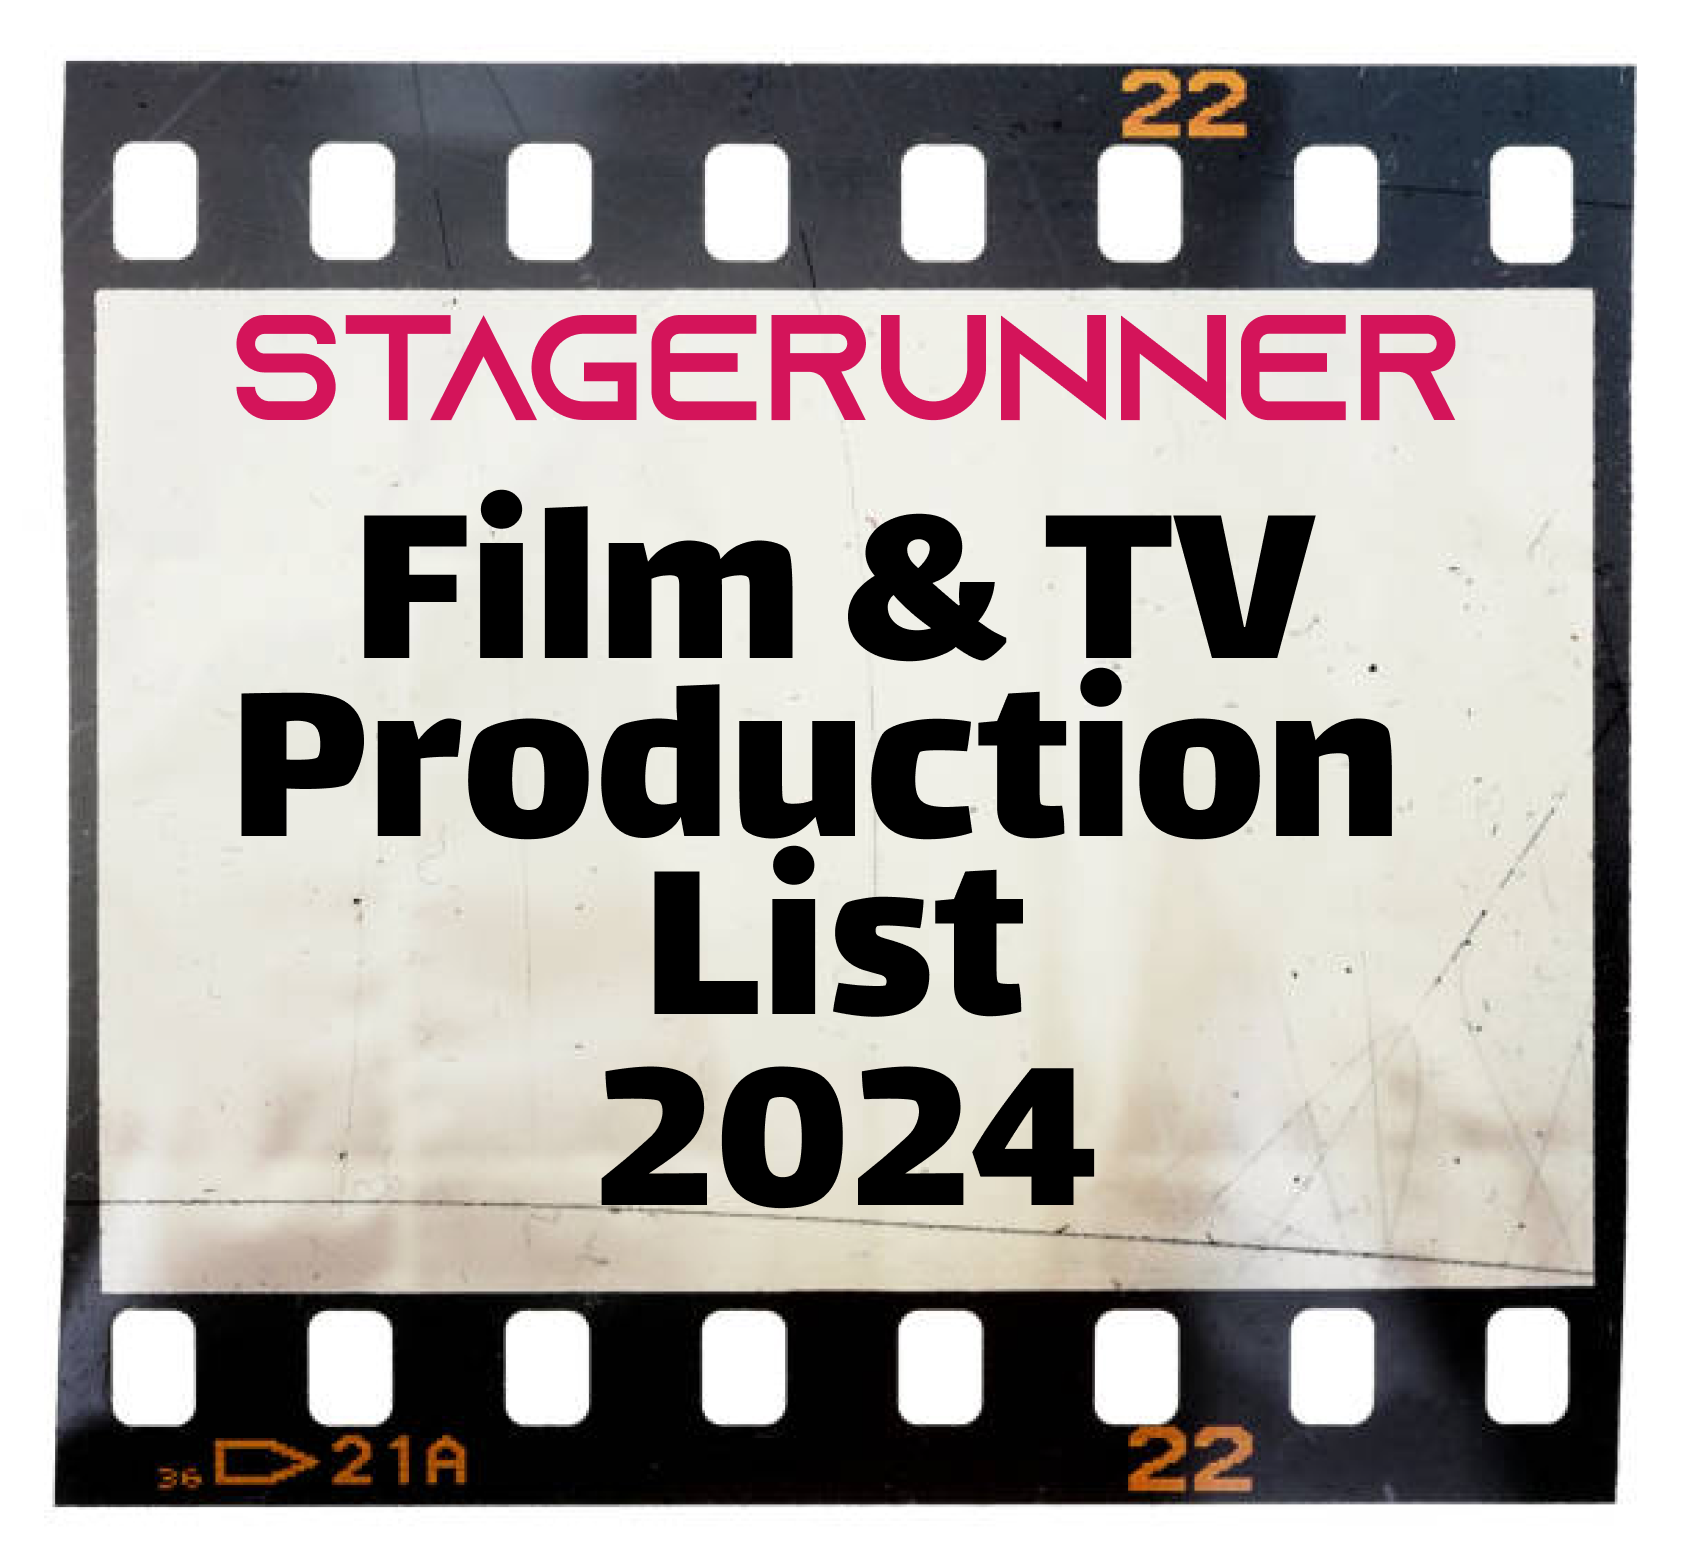 Production List 2024